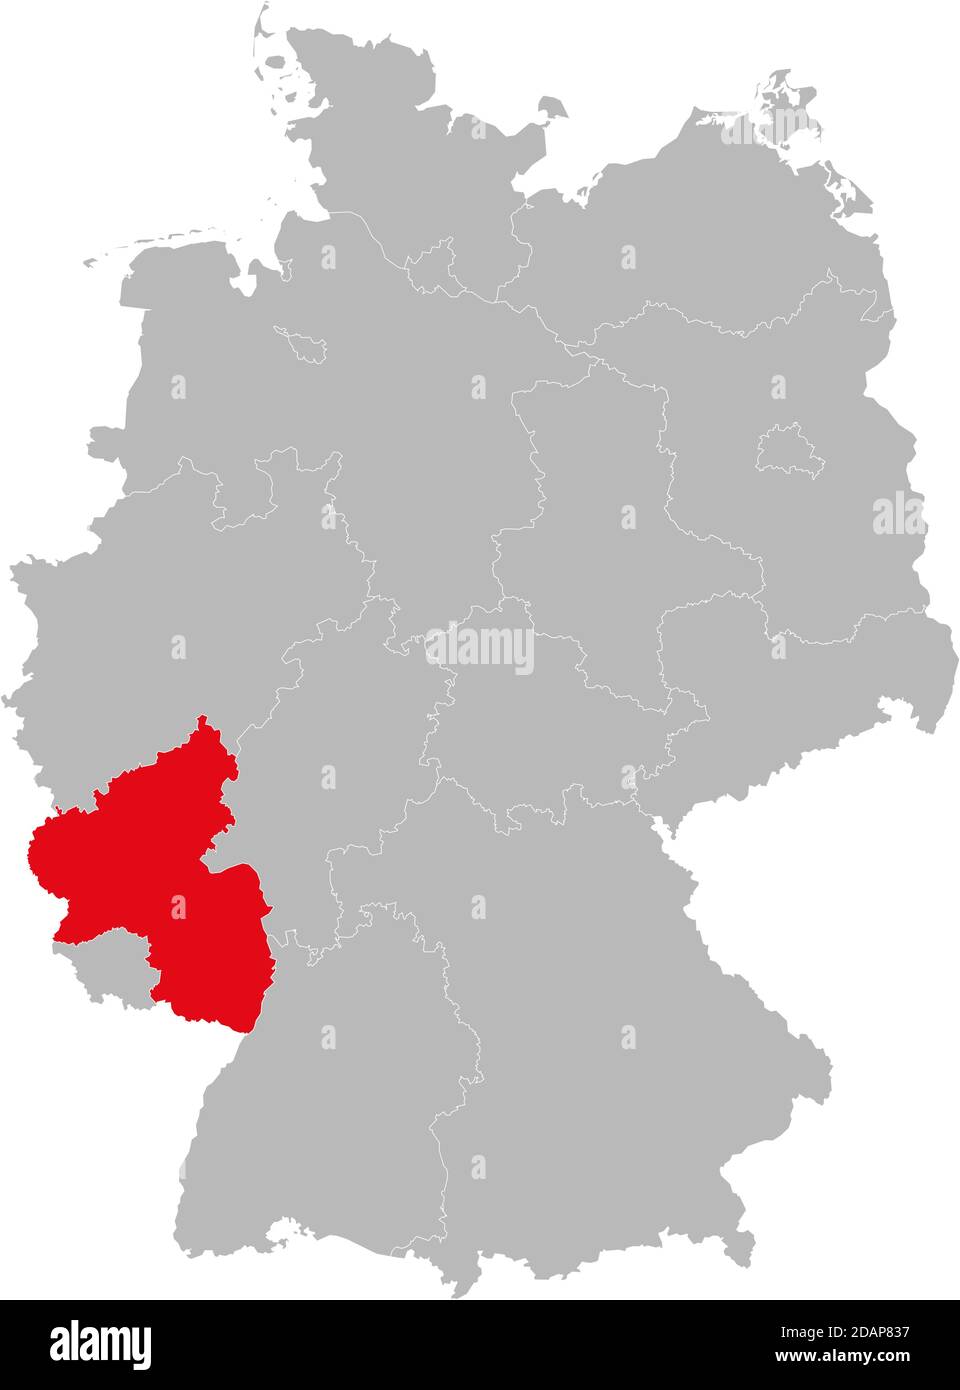 Etat de Rhénanie-Palatinat isolé sur la carte de l'Allemagne. Concepts et antécédents professionnels. Illustration de Vecteur